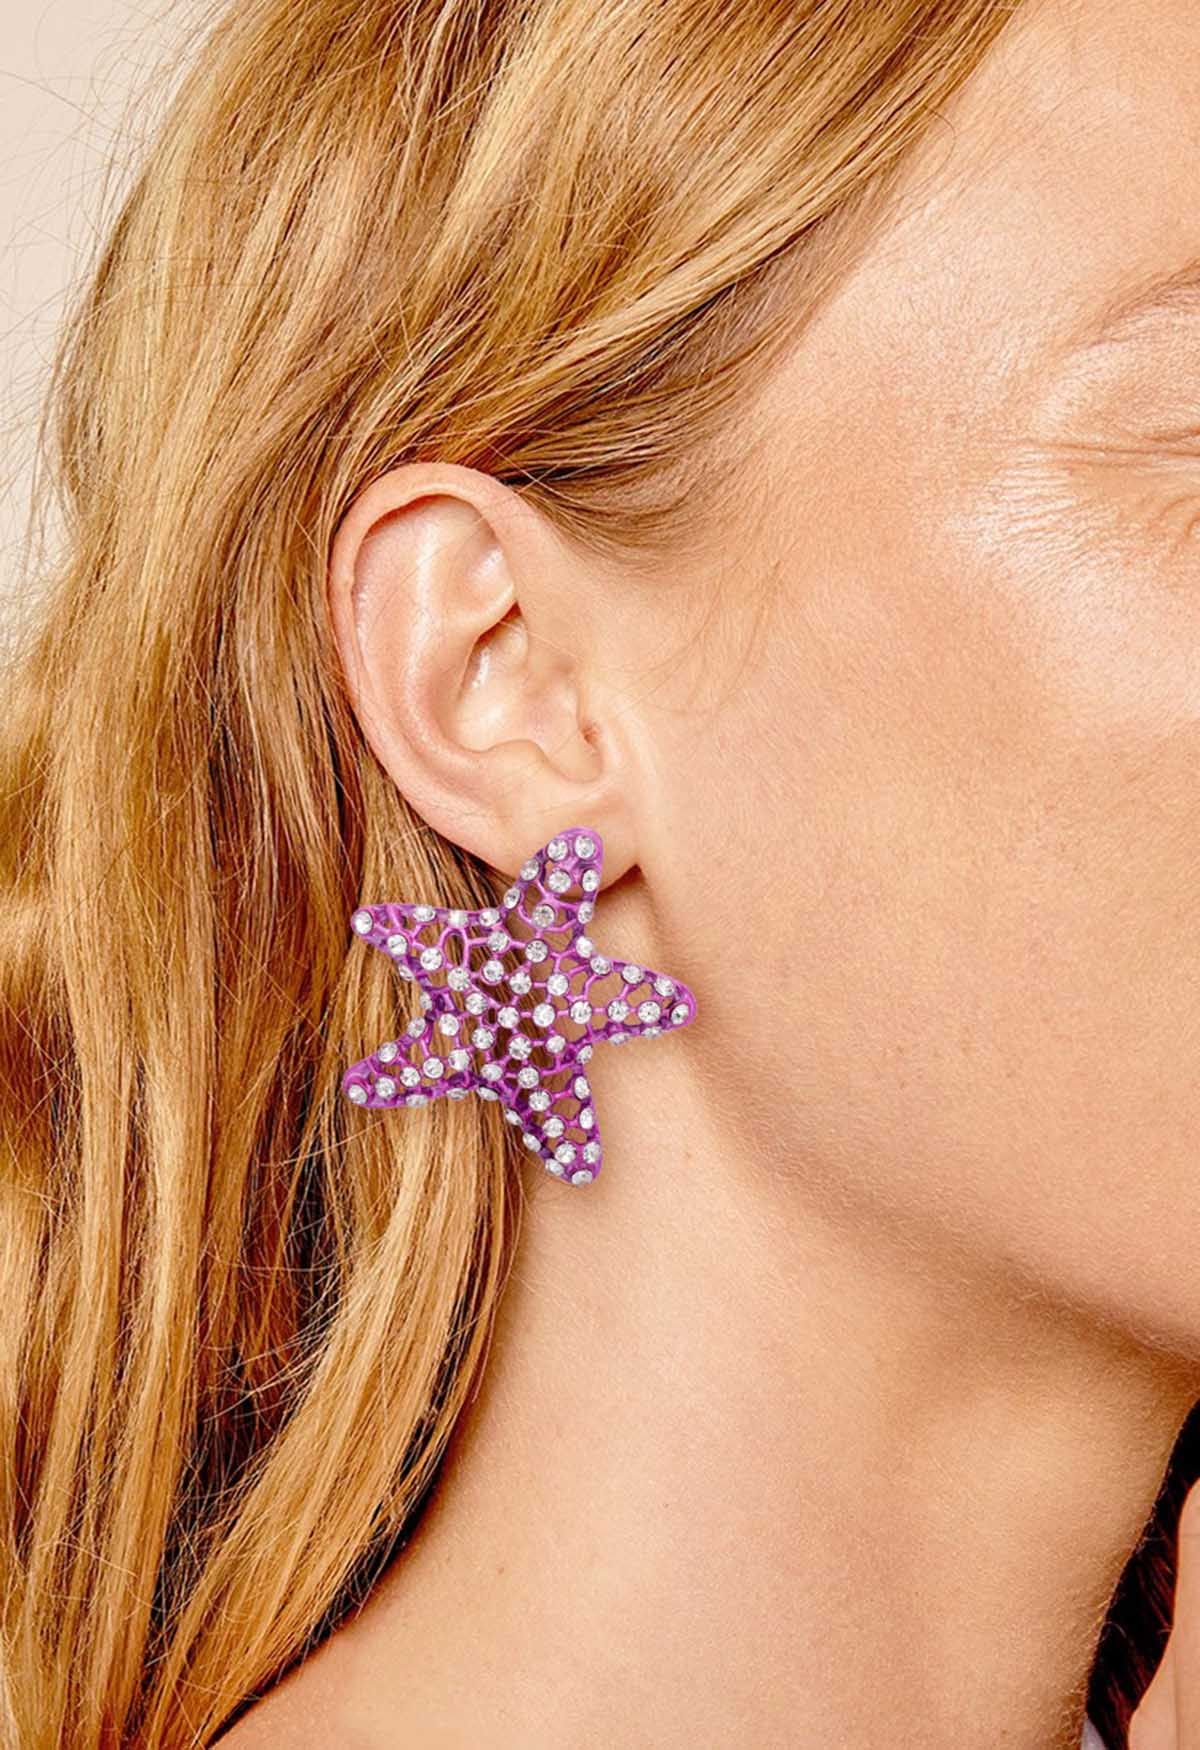 Starfish Hollow Out Zircon Earrings in Purple